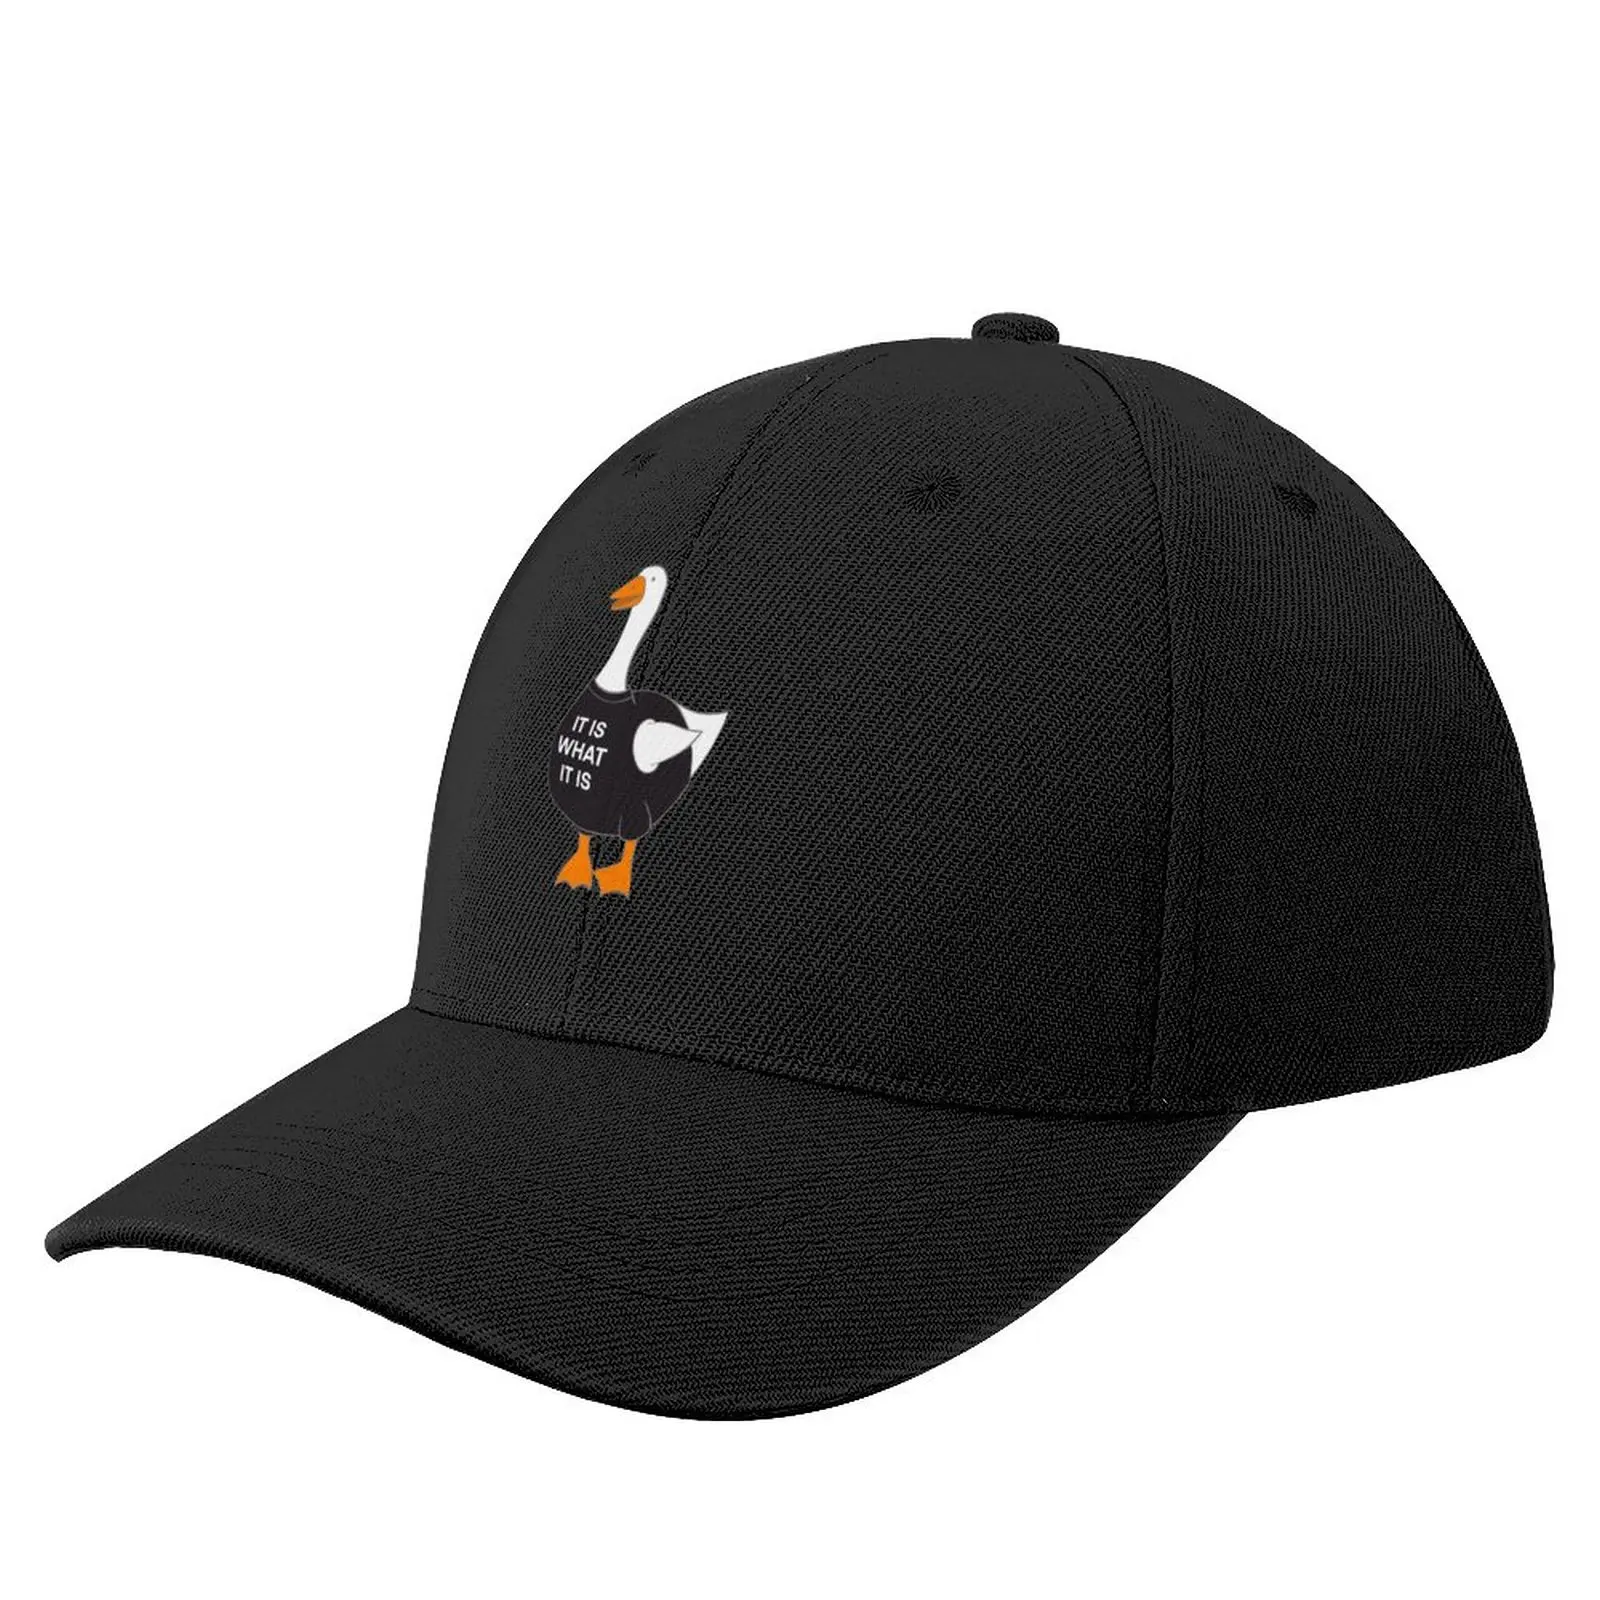 

An-Goose - It Is What It Is Goose Baseball Cap Gentleman Hat Fishing Caps Big Size Hat Women Hat Men's